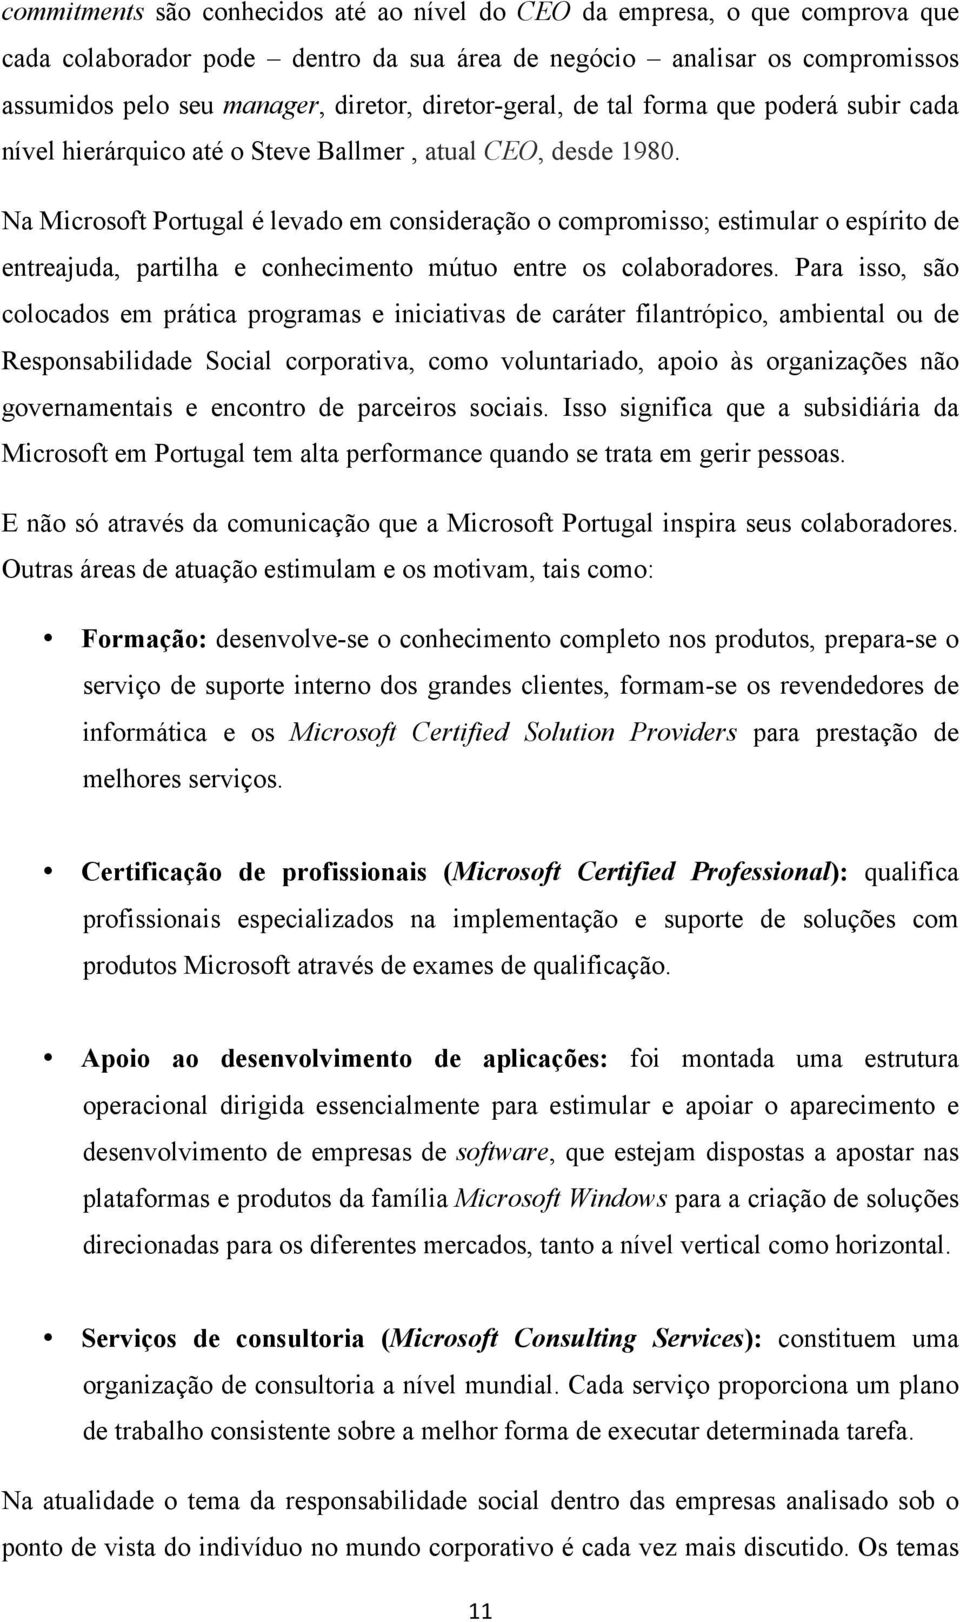 Na Microsoft Portugal é levado em consideração o compromisso; estimular o espírito de entreajuda, partilha e conhecimento mútuo entre os colaboradores.